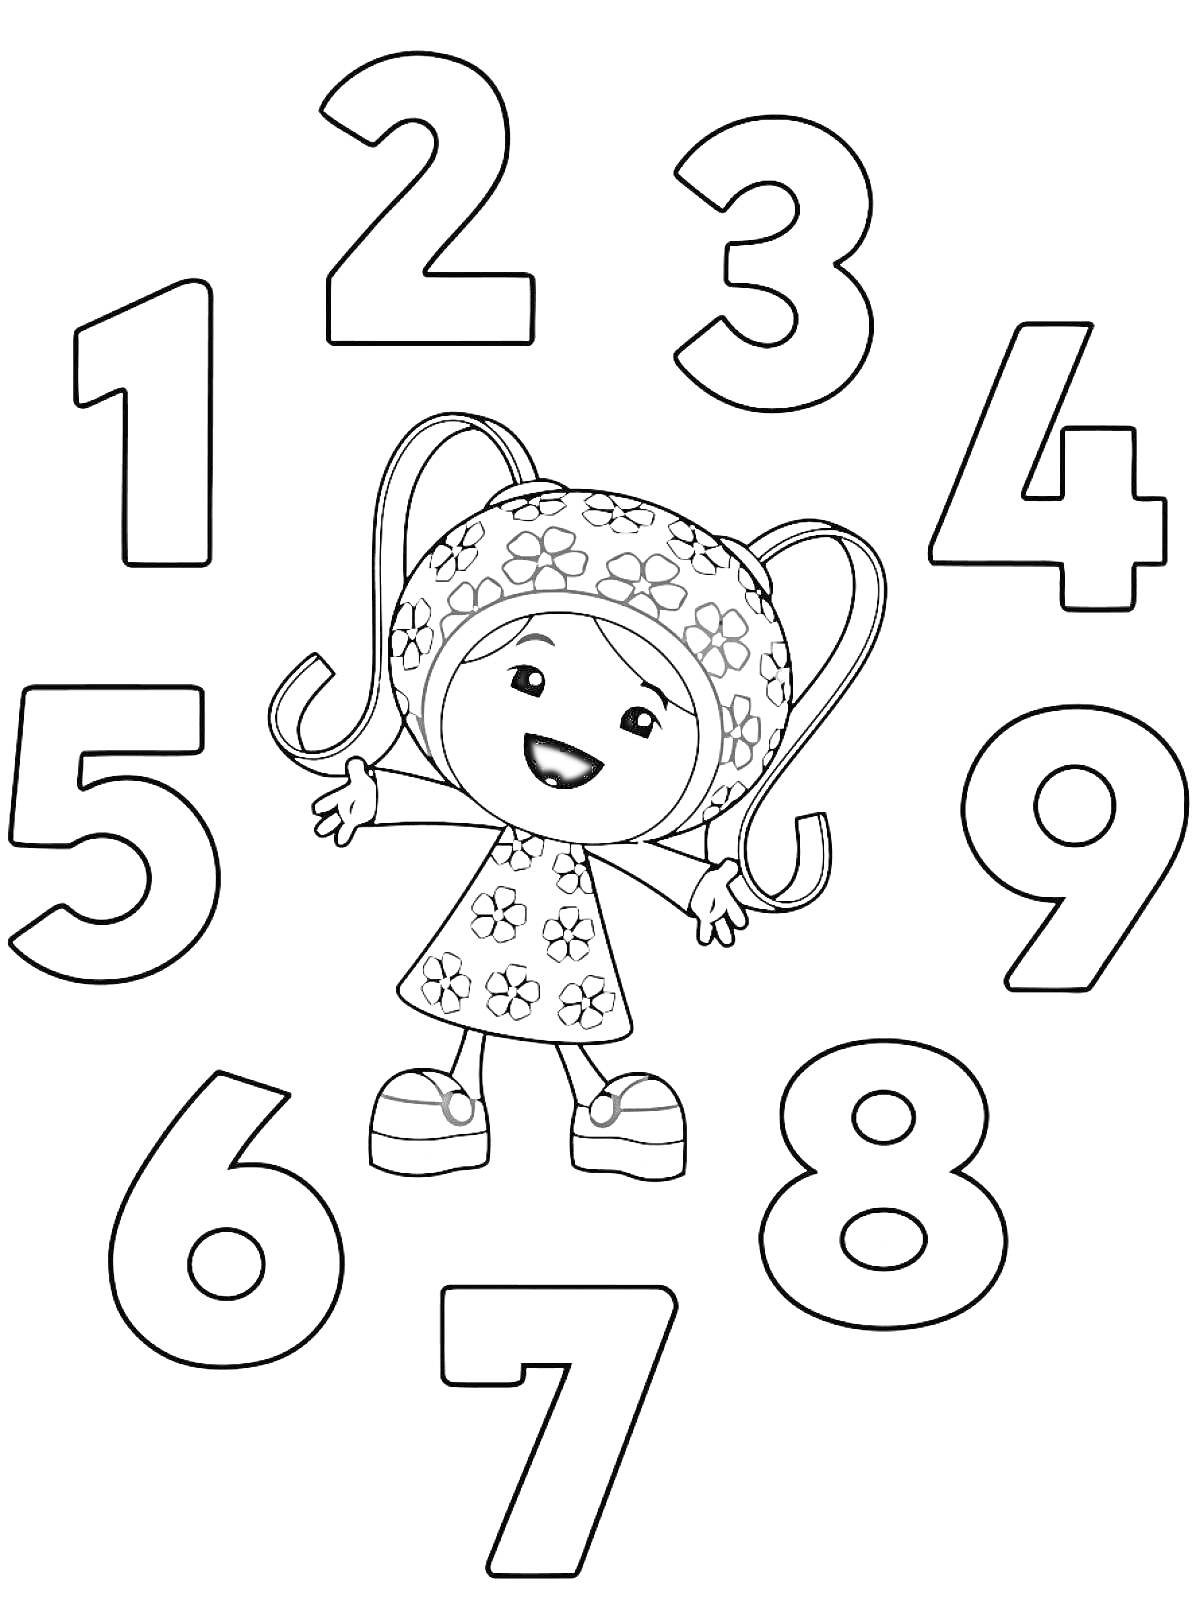 На раскраске изображено: Умизуми, Девочка, Робот, Числа, Цветы, Платье, Косички, Ботинки, Цифра 8, Цифра 2, Цифра 5, Цифра 7, Цифра 6, Цифра 1, Цифра 3, Цифра 9, Цифра 4